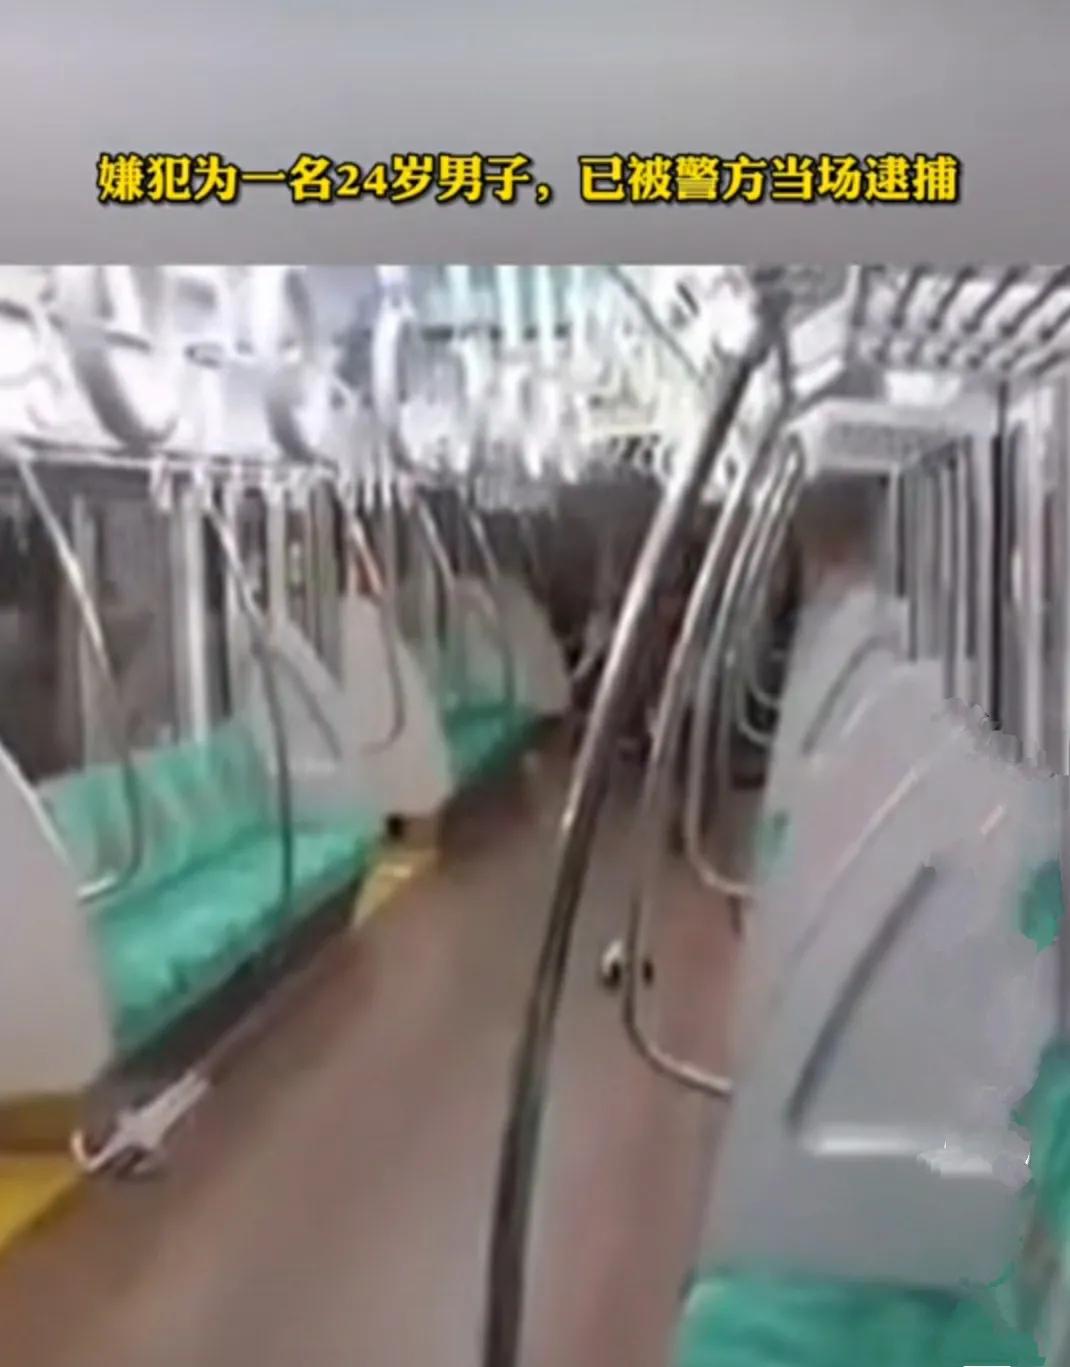 24岁男子东京地铁砍人后淡定抽烟